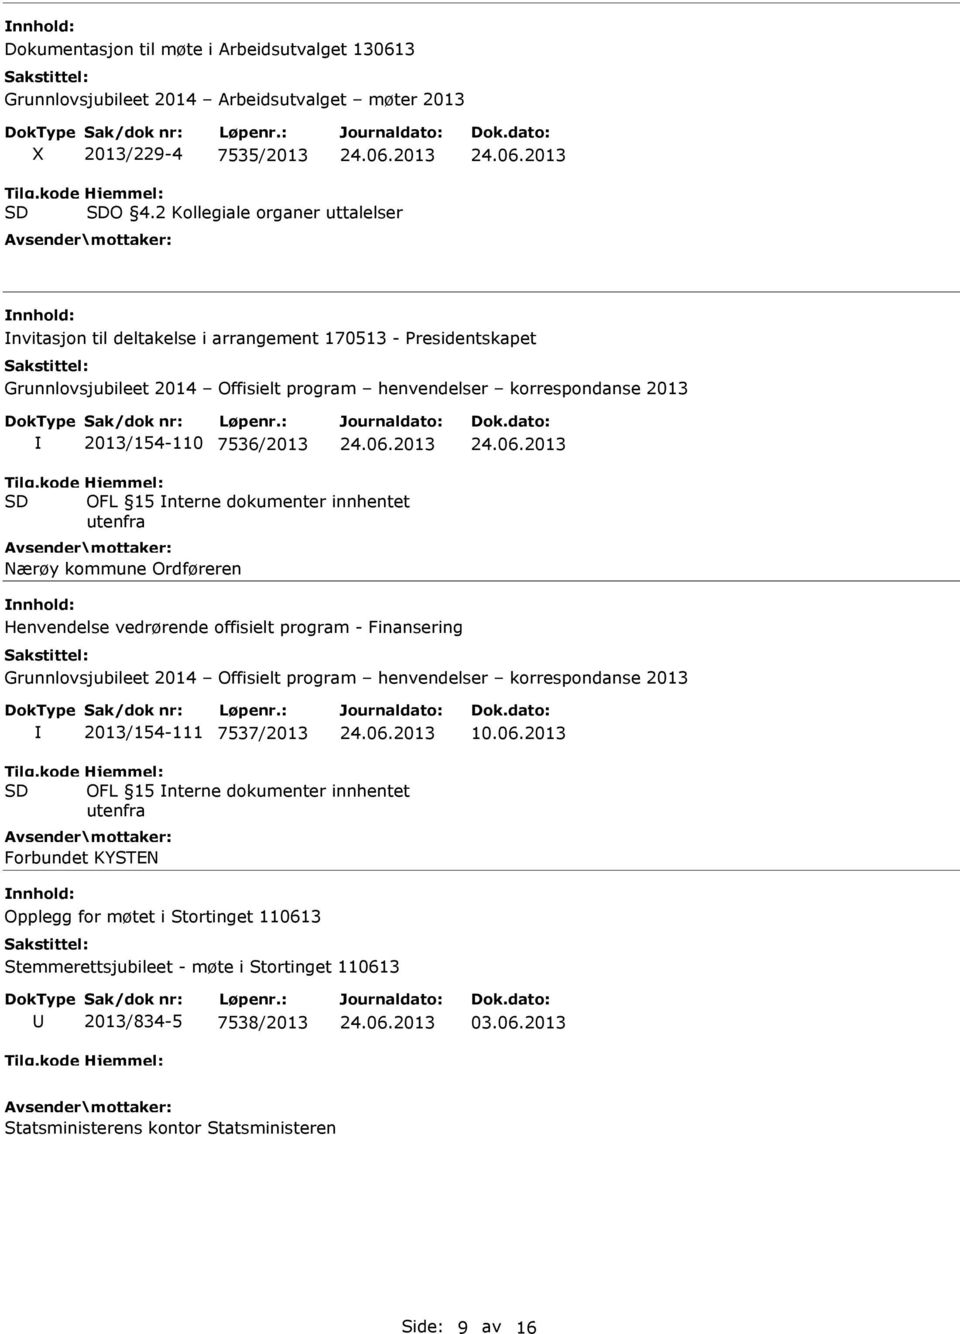 OFL 15 nterne dokumenter innhentet utenfra Nærøy kommune Ordføreren Henvendelse vedrørende offisielt program - Finansering Grunnlovsjubileet 2014 Offisielt program henvendelser korrespondanse